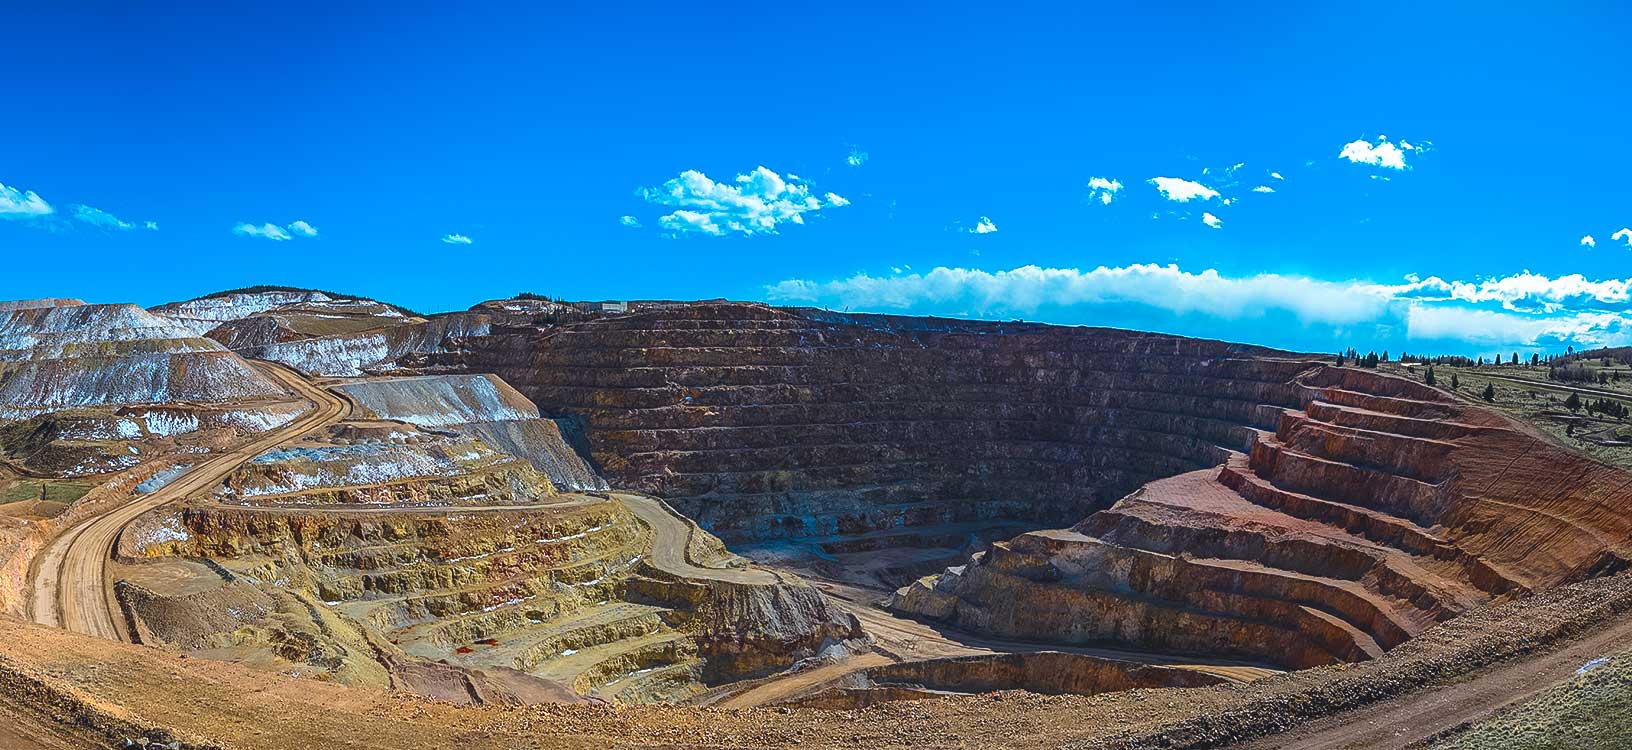 vue générale de la mine à ciel ouvert sous un ciel bleu